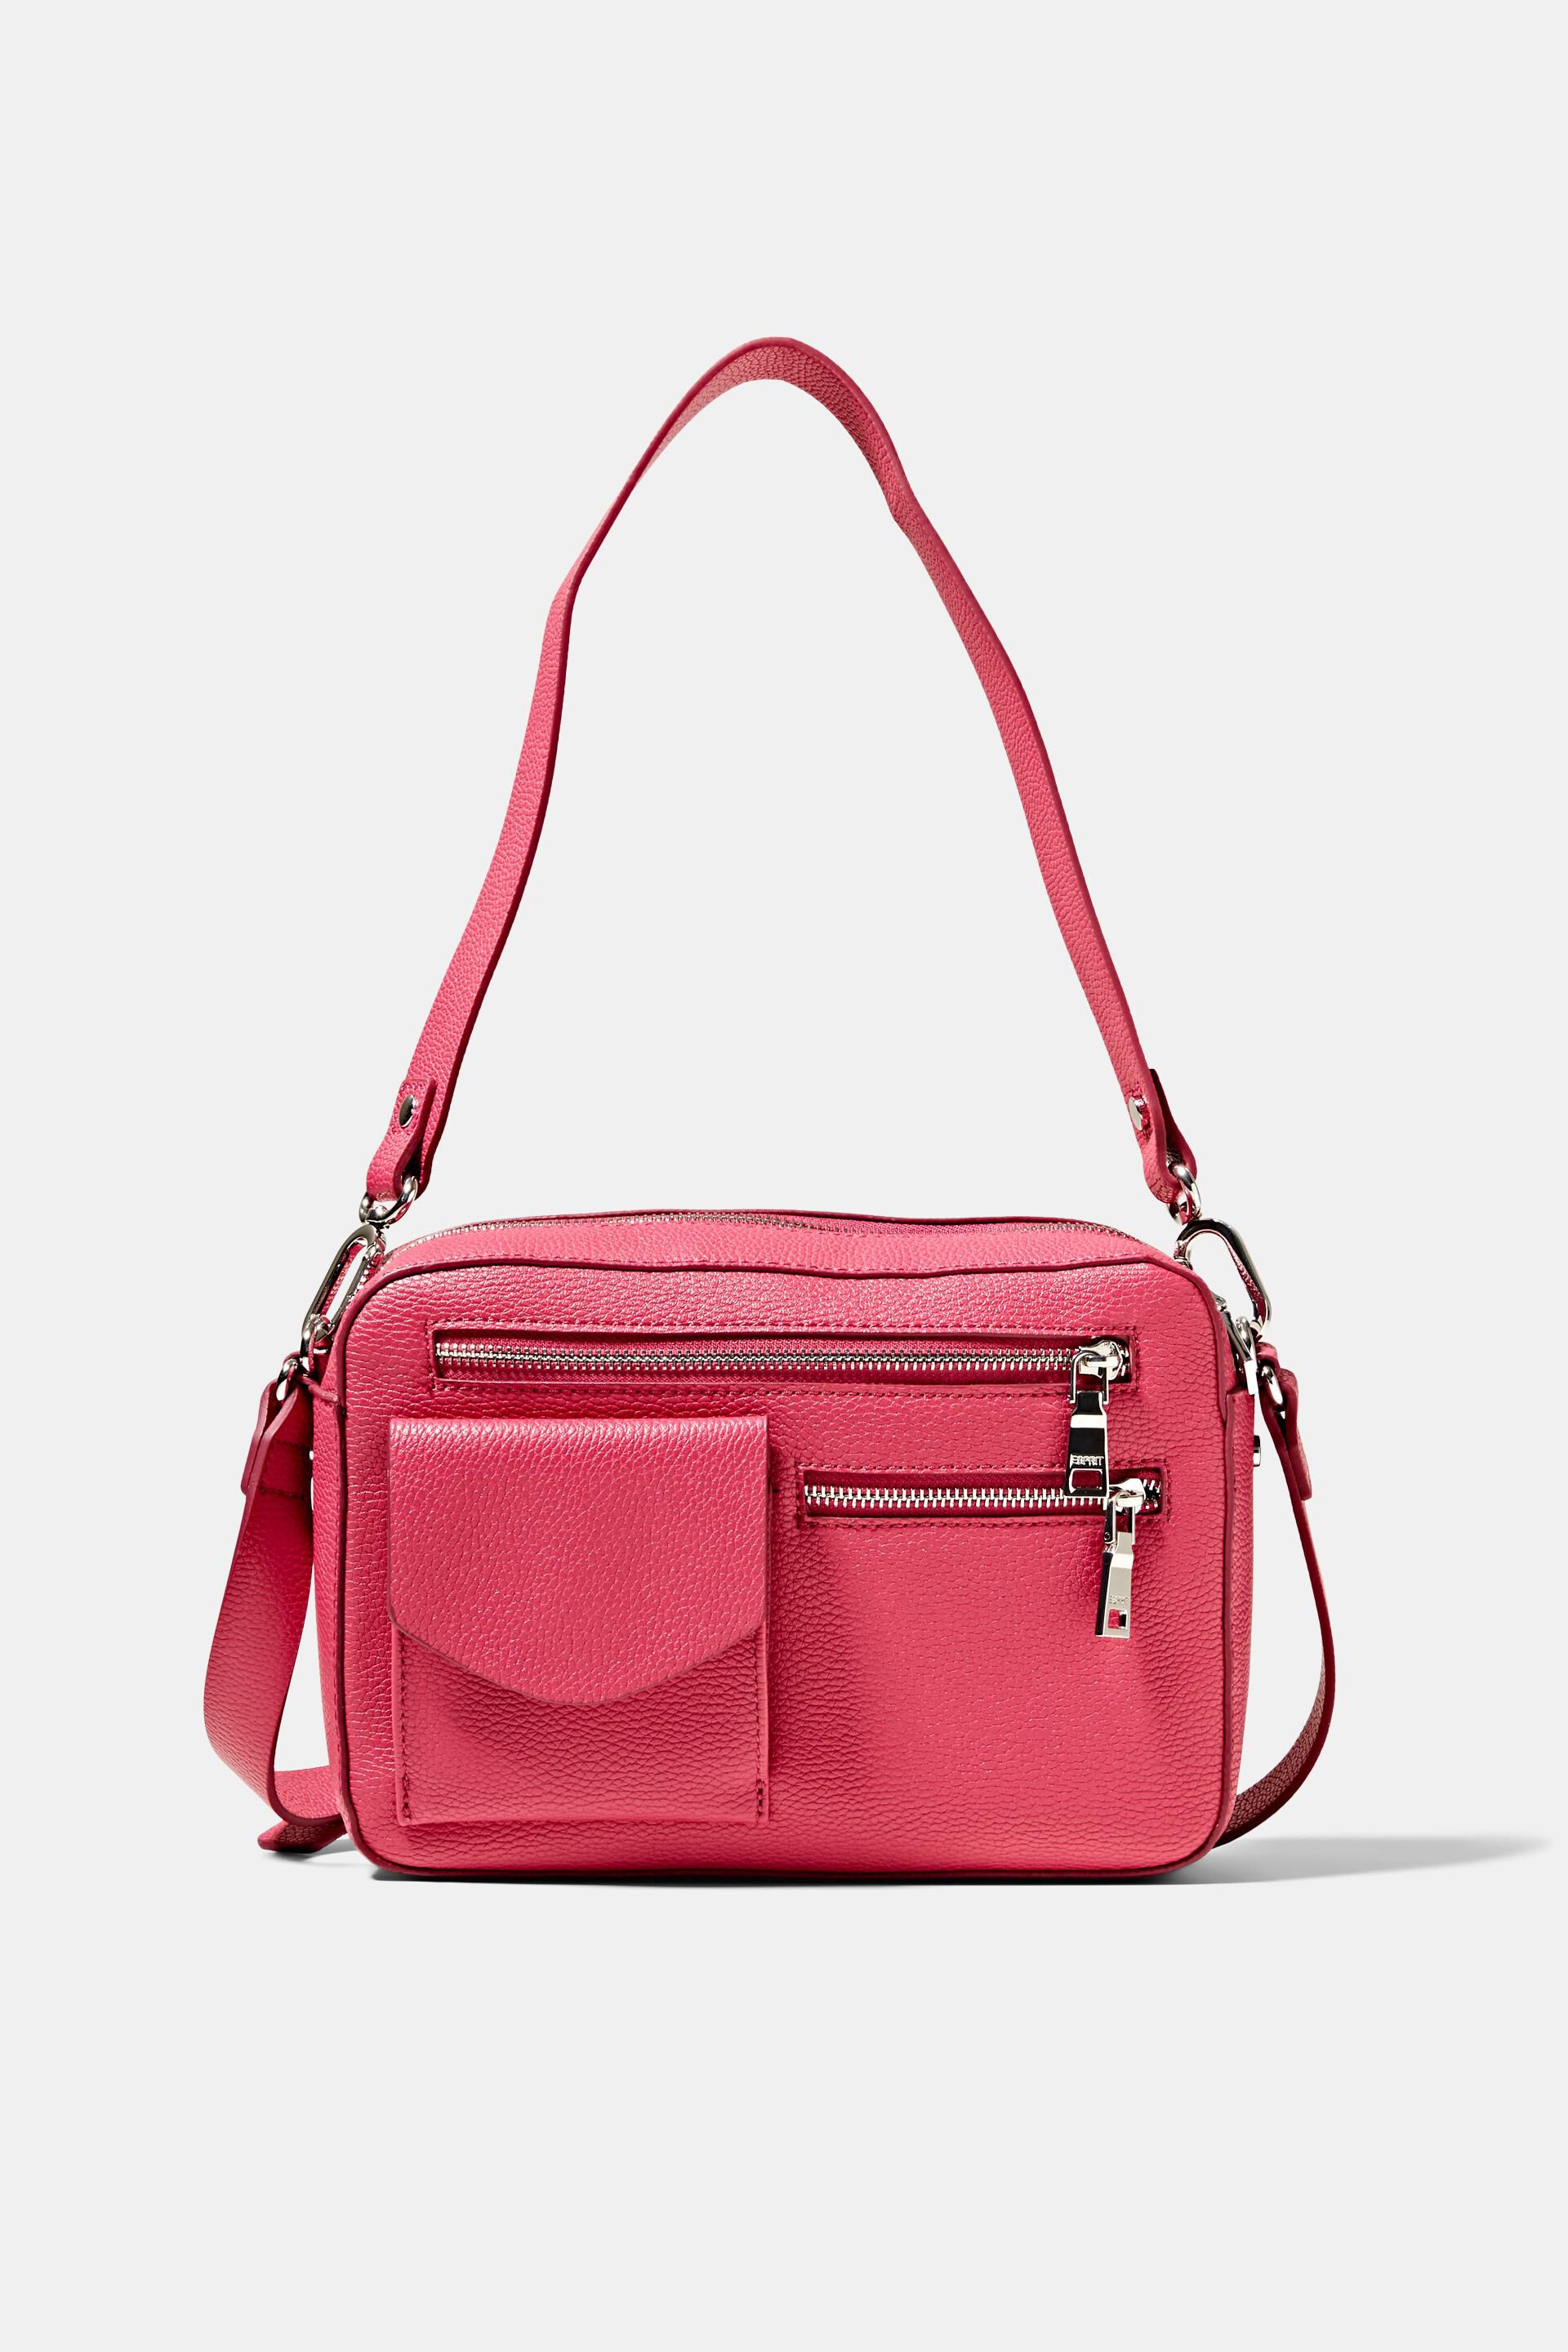 Taglia: ONE Size Red Leather Bottega Veneta Handbag Rosso Miinto Donna Accessori Borse Borse a mano Donna 